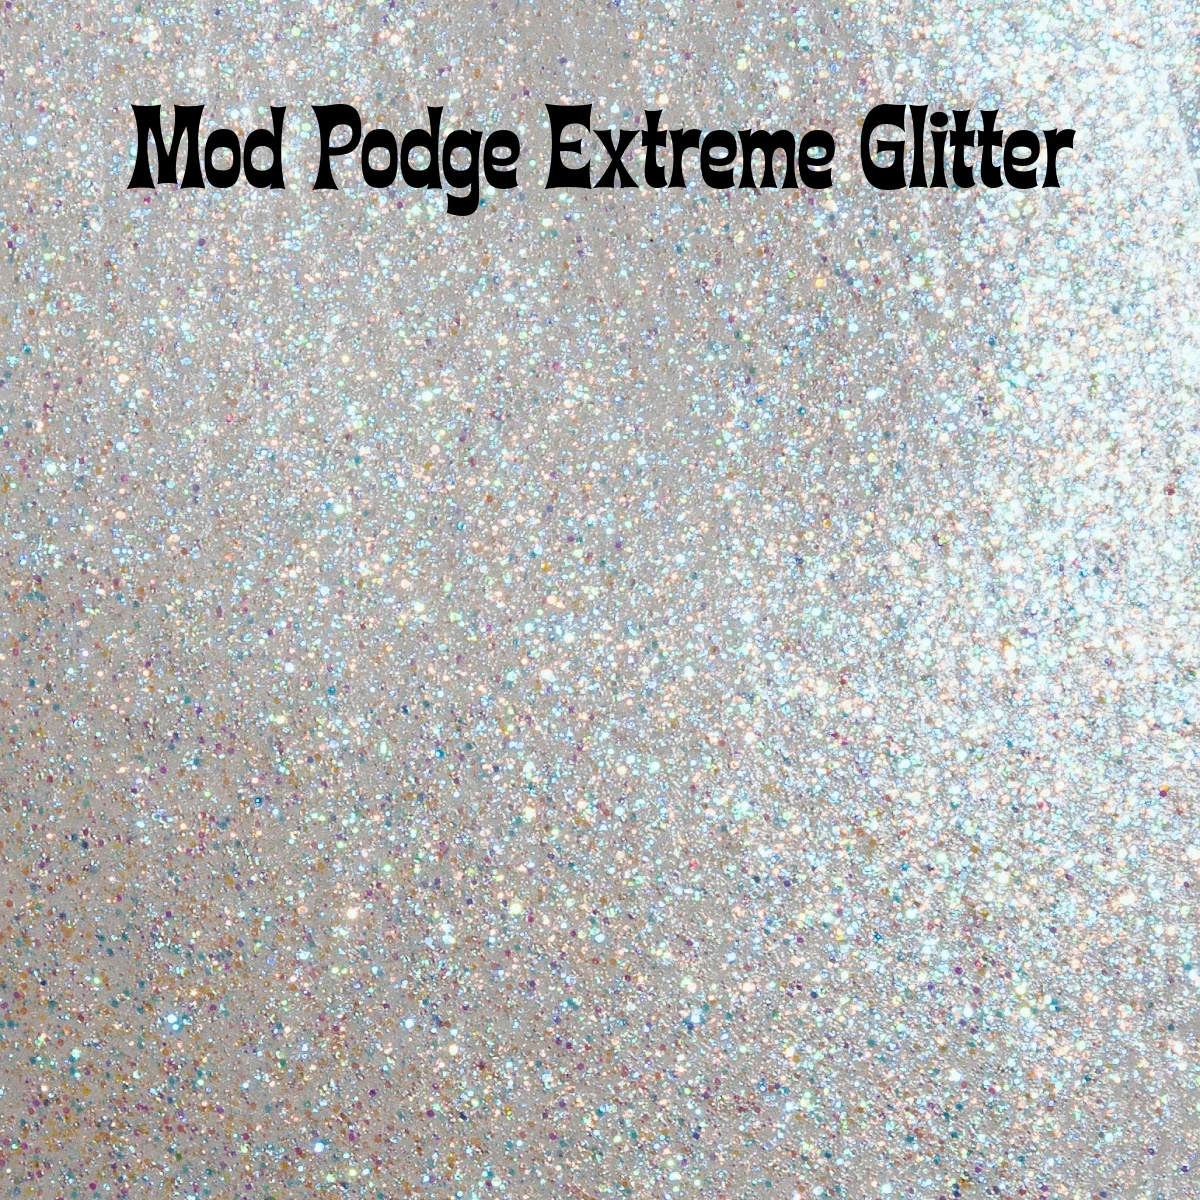 Sparkle Mod Podge: Your Ultimate Guide! - Mod Podge Rocks